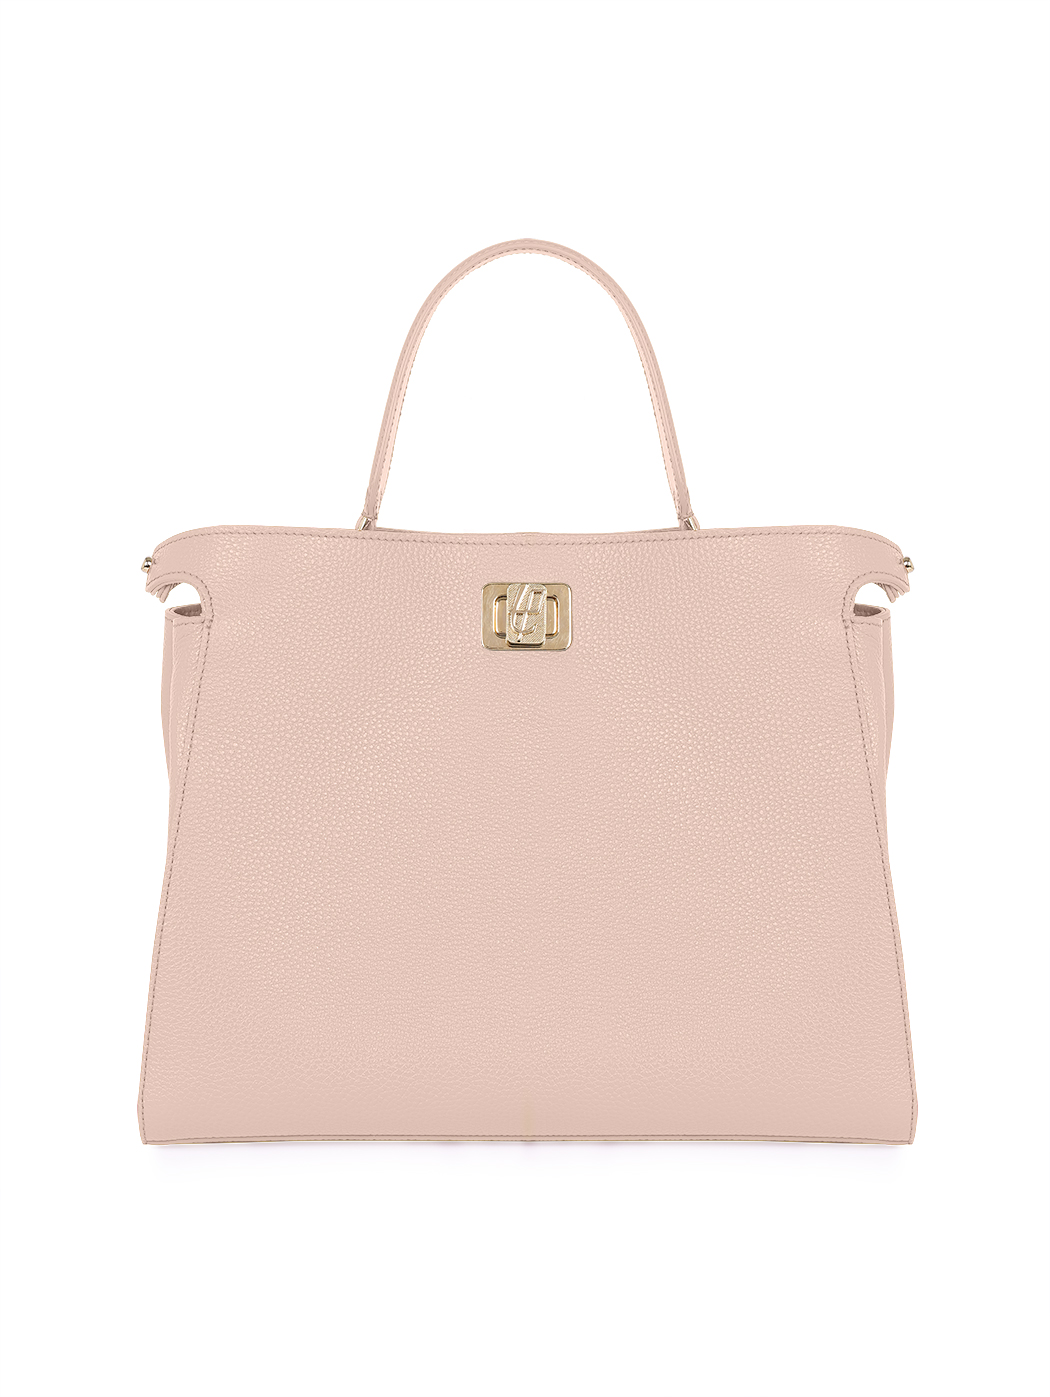 Top Handle Turnlock Handbag Rita Blush Pink